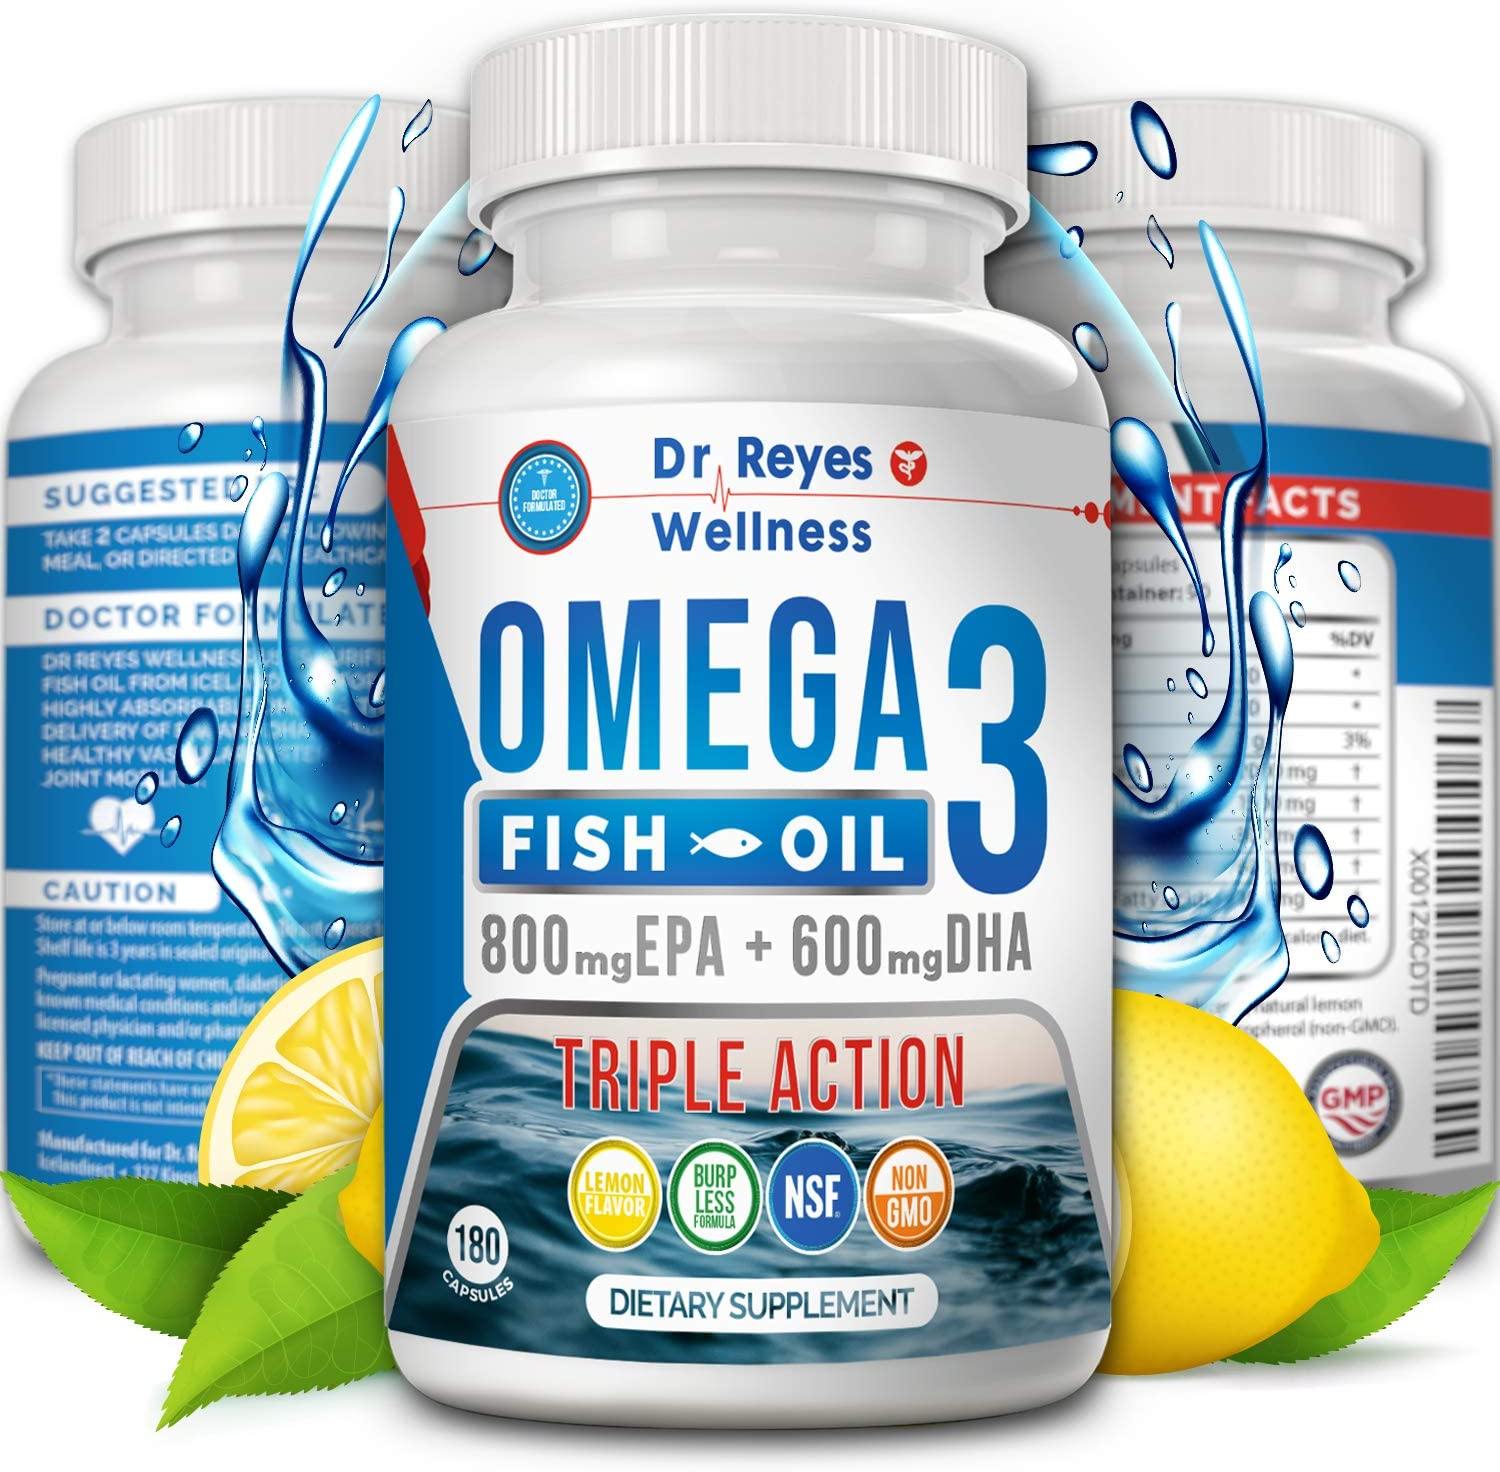 Pharm Nature Omega 3 Premium : EPA, DHA